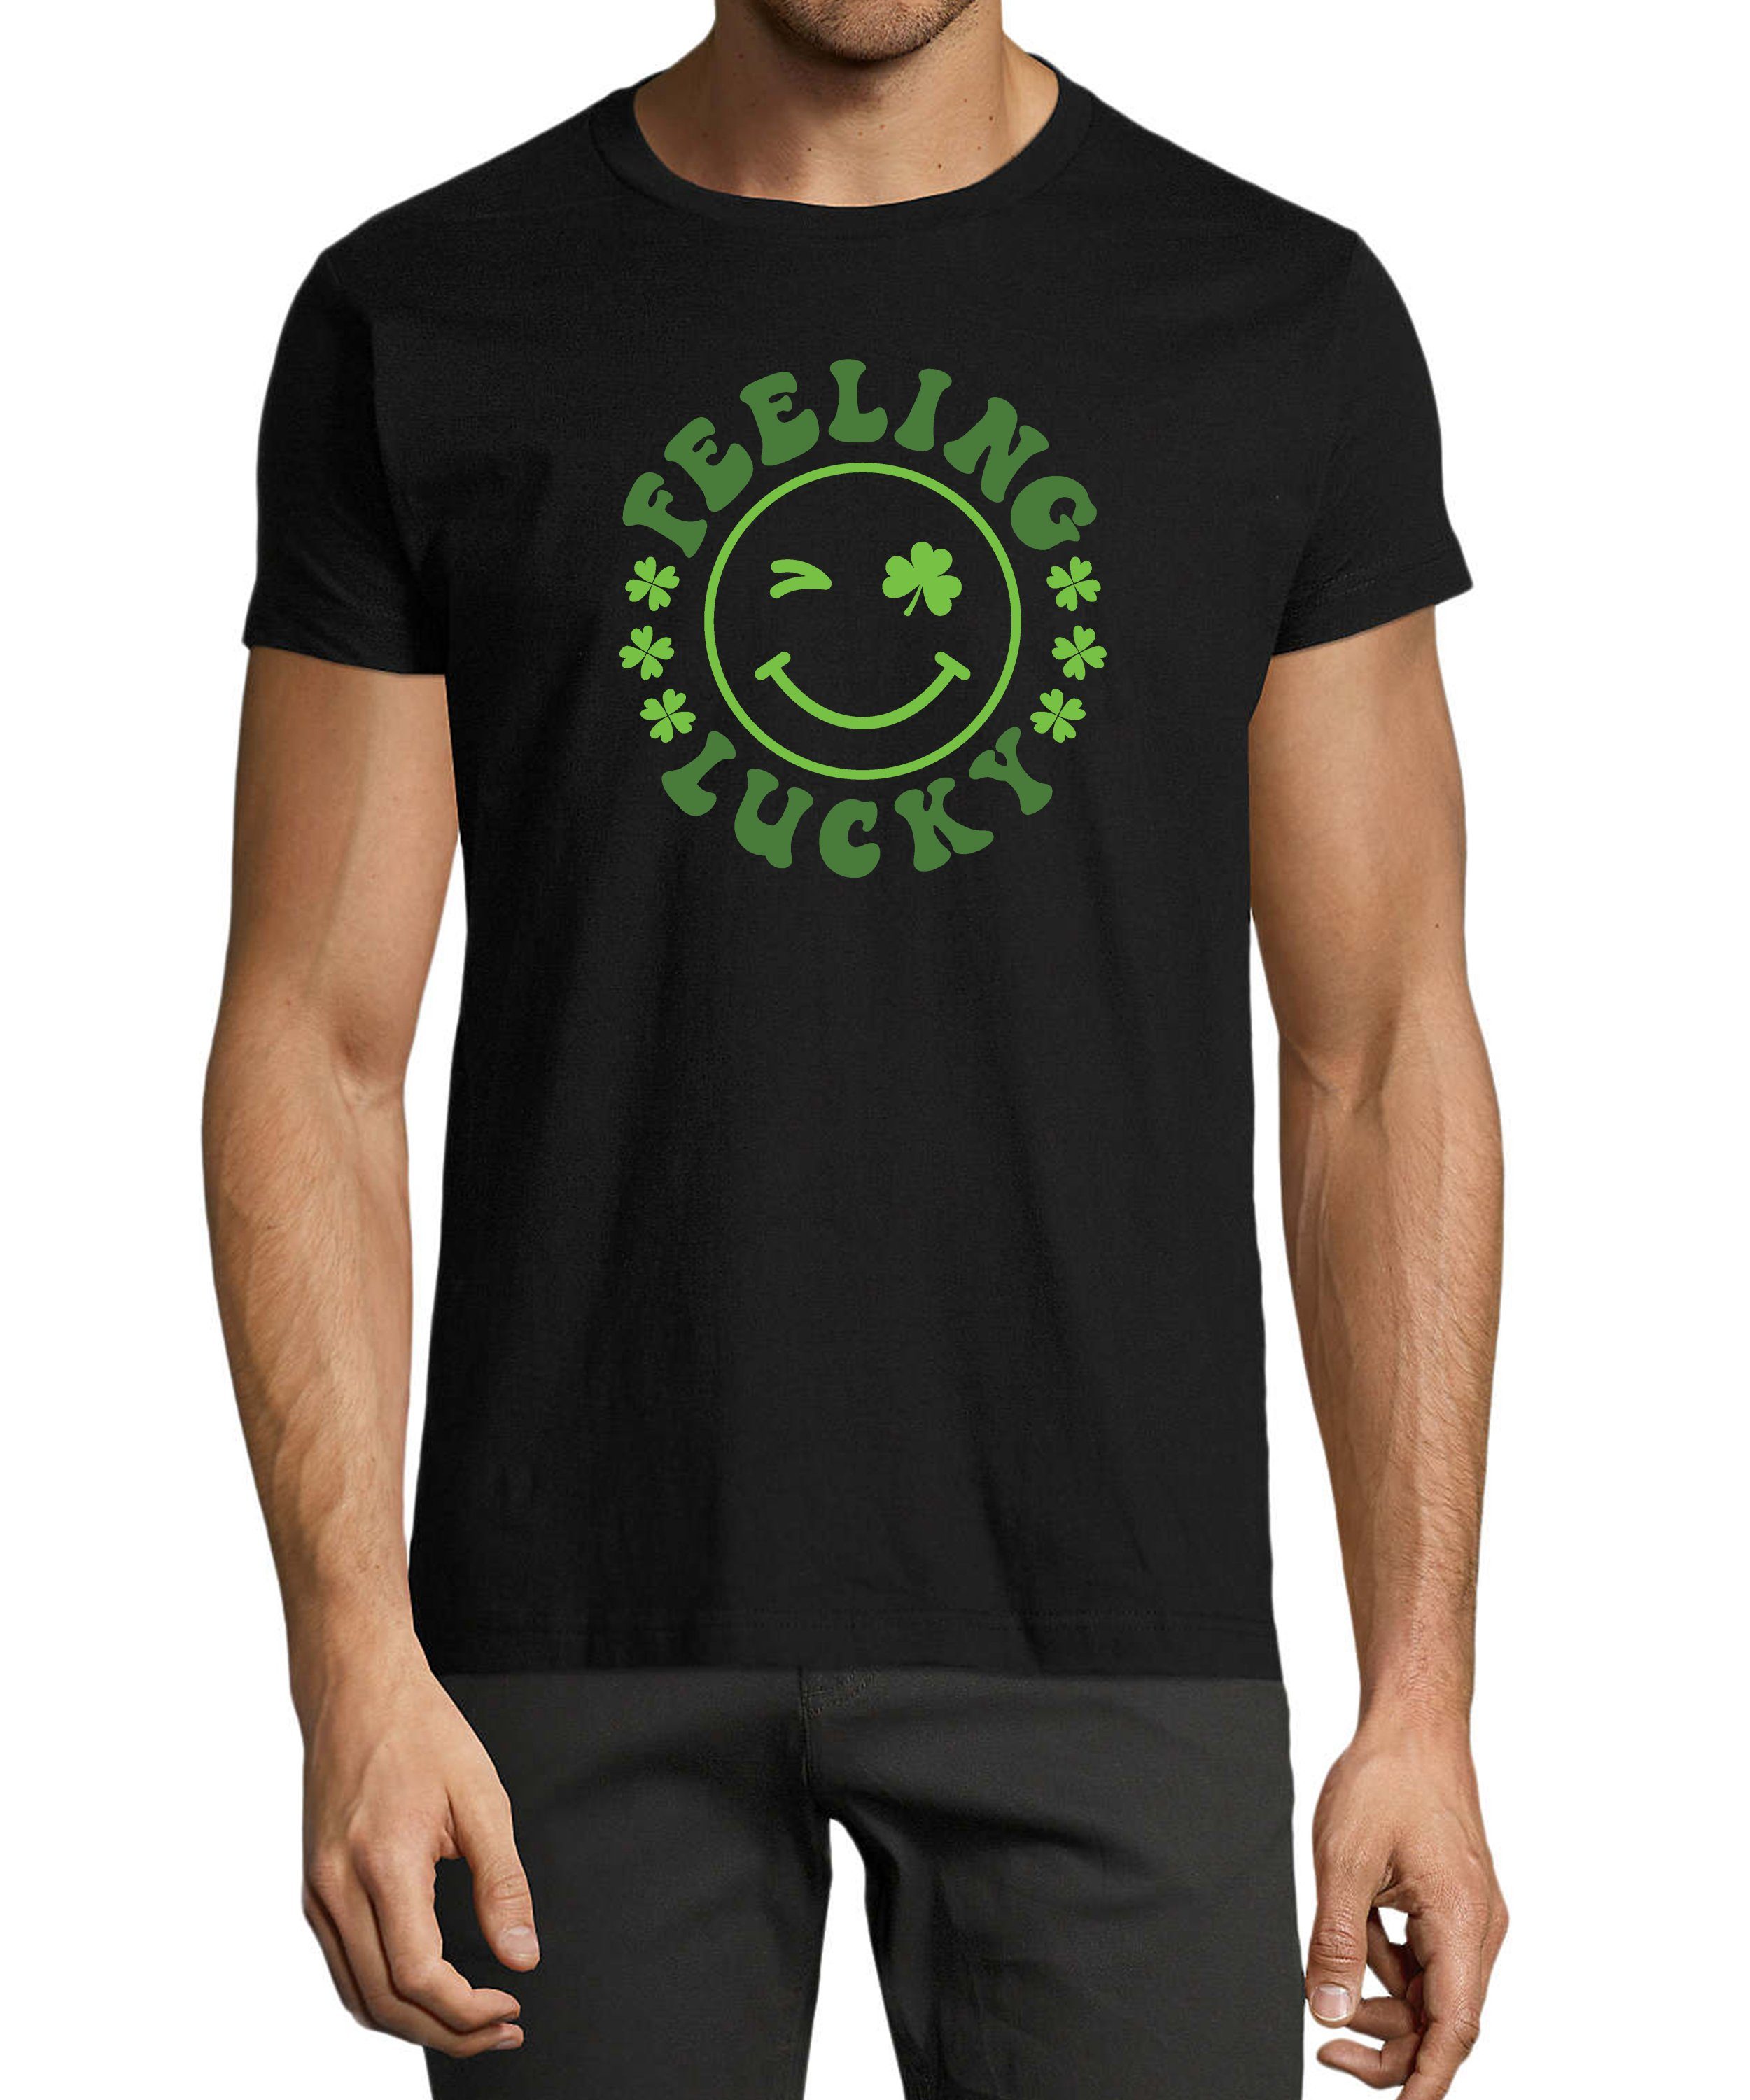 MyDesign24 T-Shirt Herren Smiley Print Shirt - Zwinkernder Smiley mit Kleeblättern Baumwollshirt mit Aufdruck Regular Fit, i295 schwarz | T-Shirts